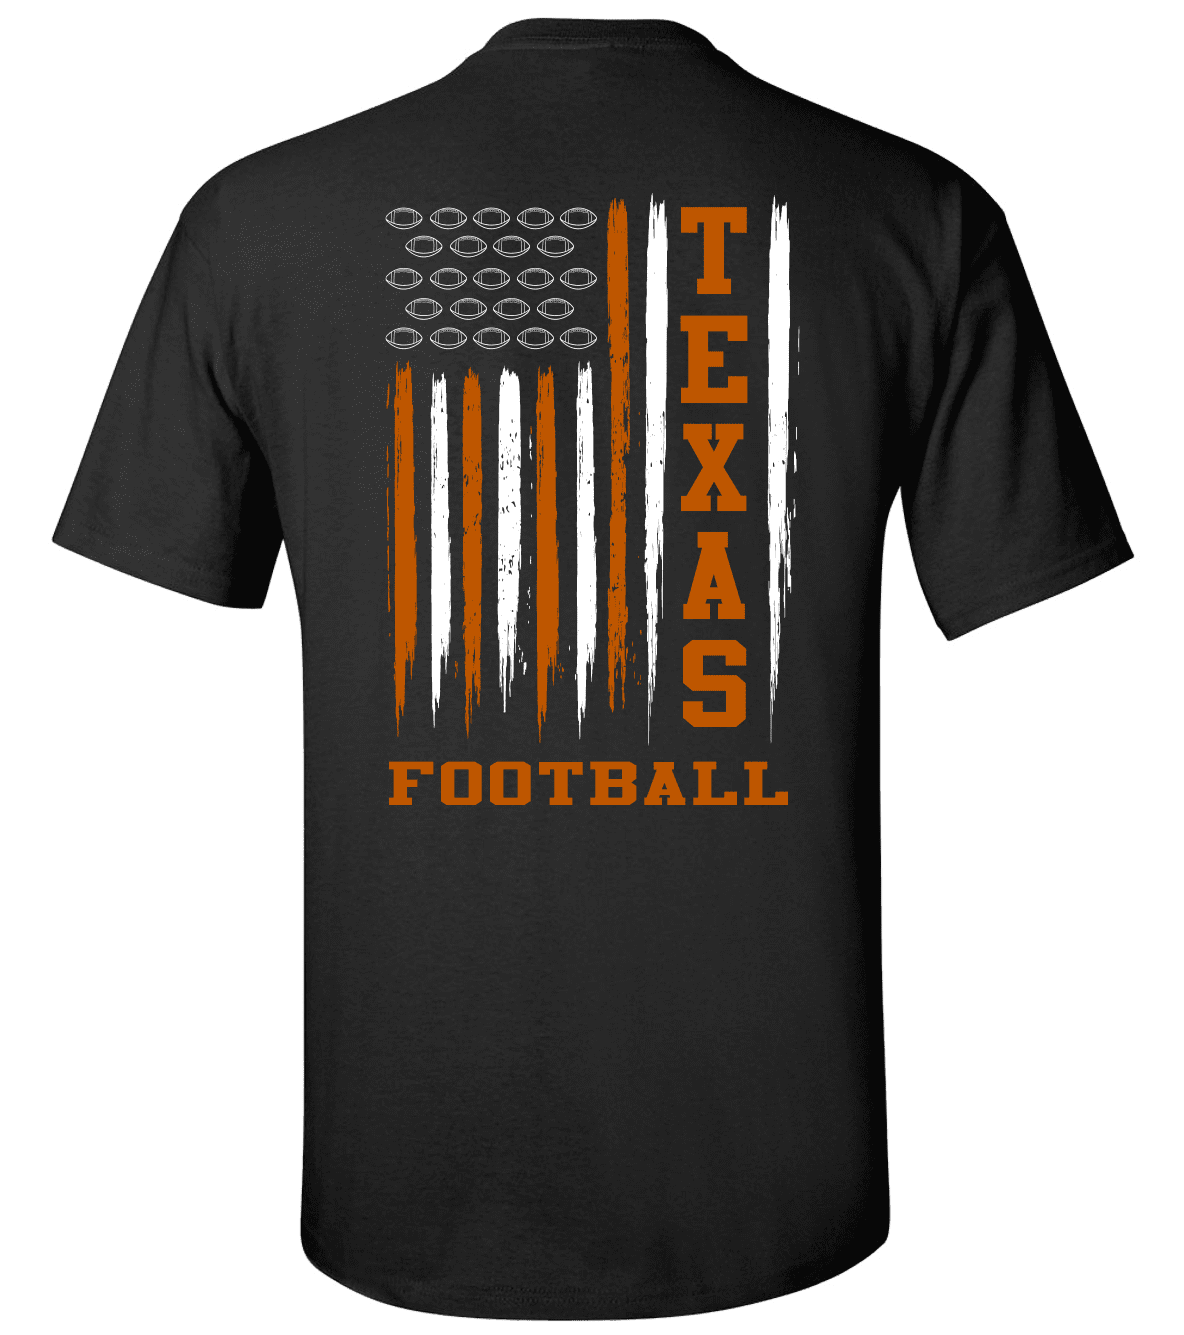 American Football T-Shirt  Football tshirts, American football, Team t  shirts